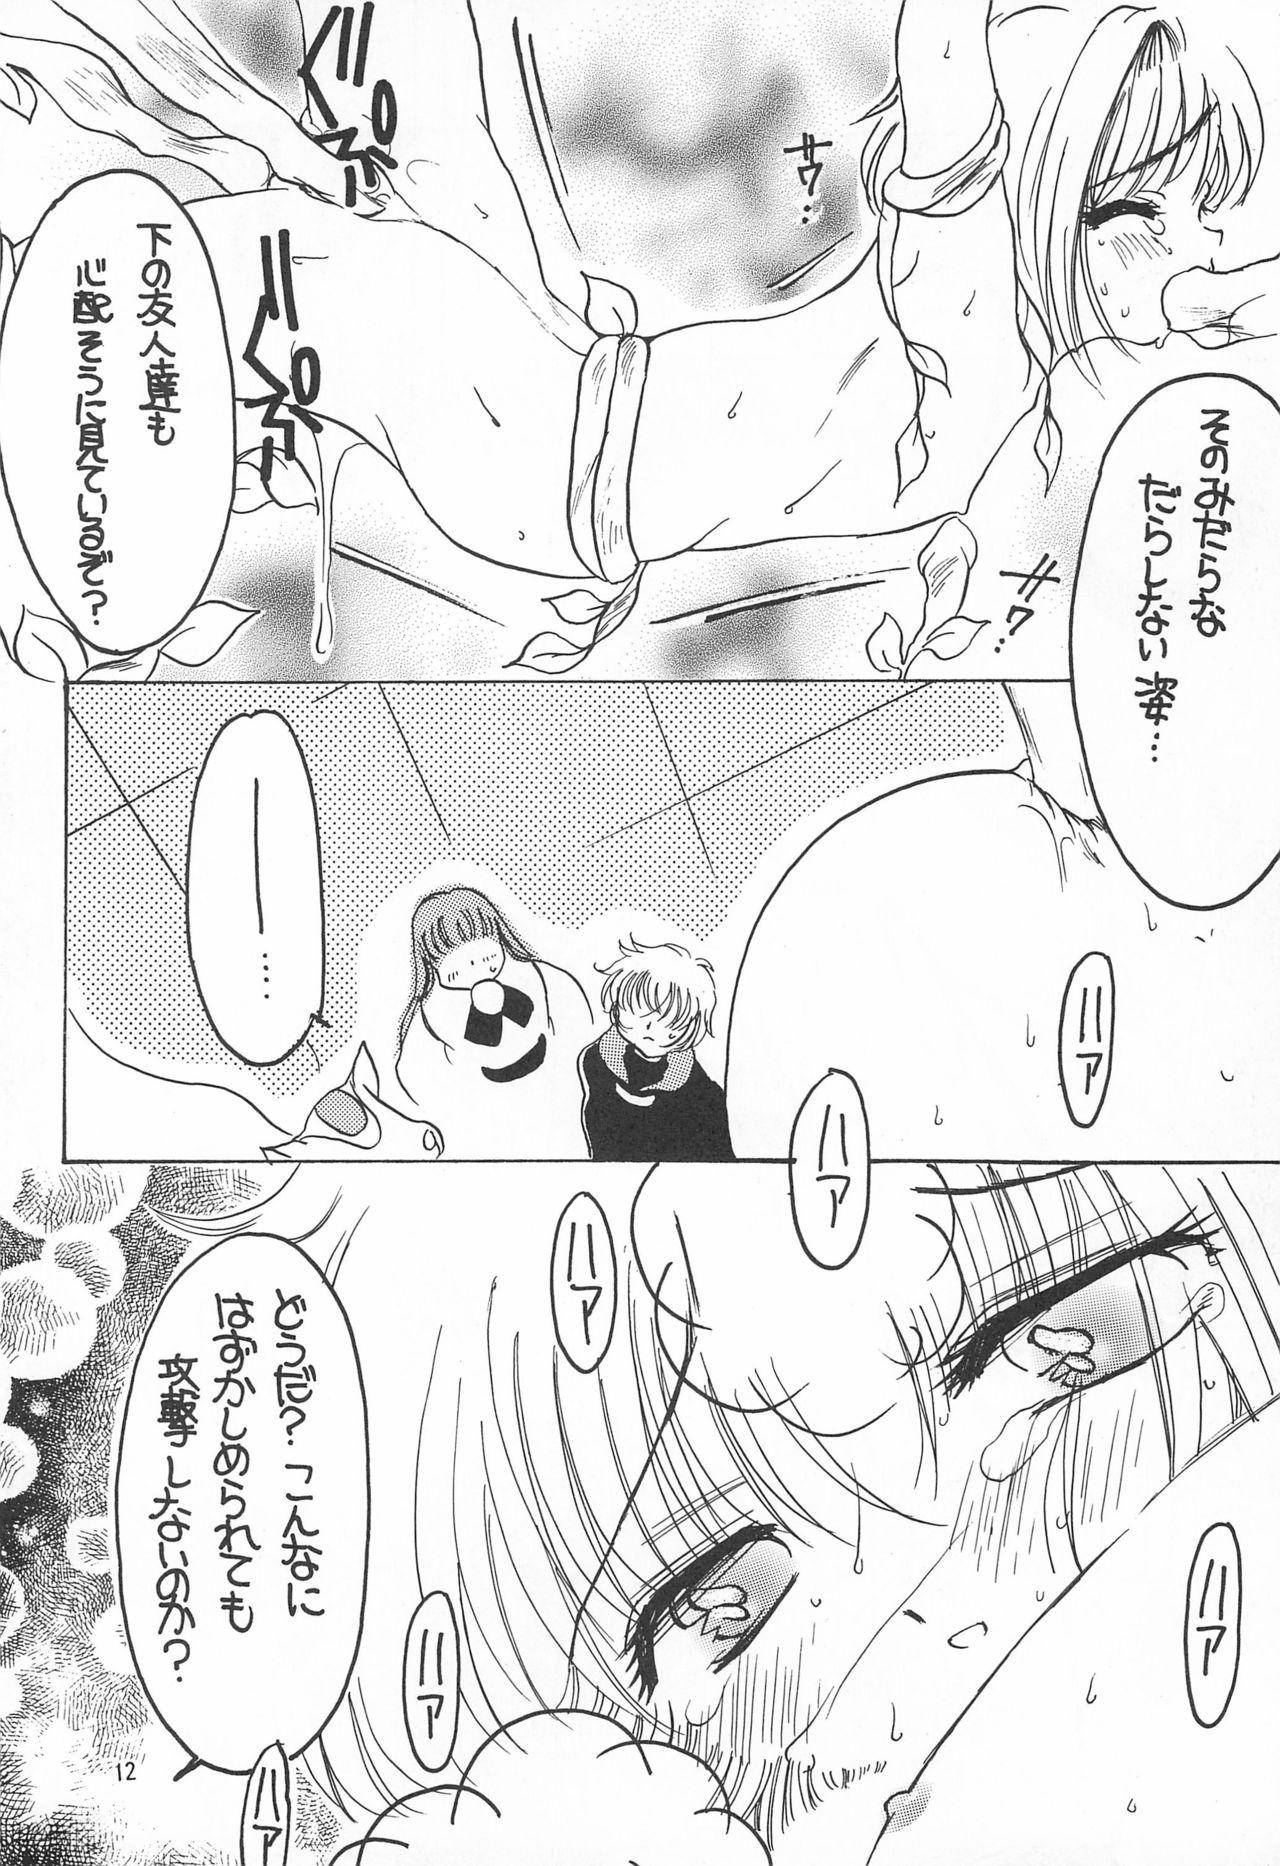 Groupfuck Sakura Saku 6 - Cardcaptor sakura Friend - Page 12